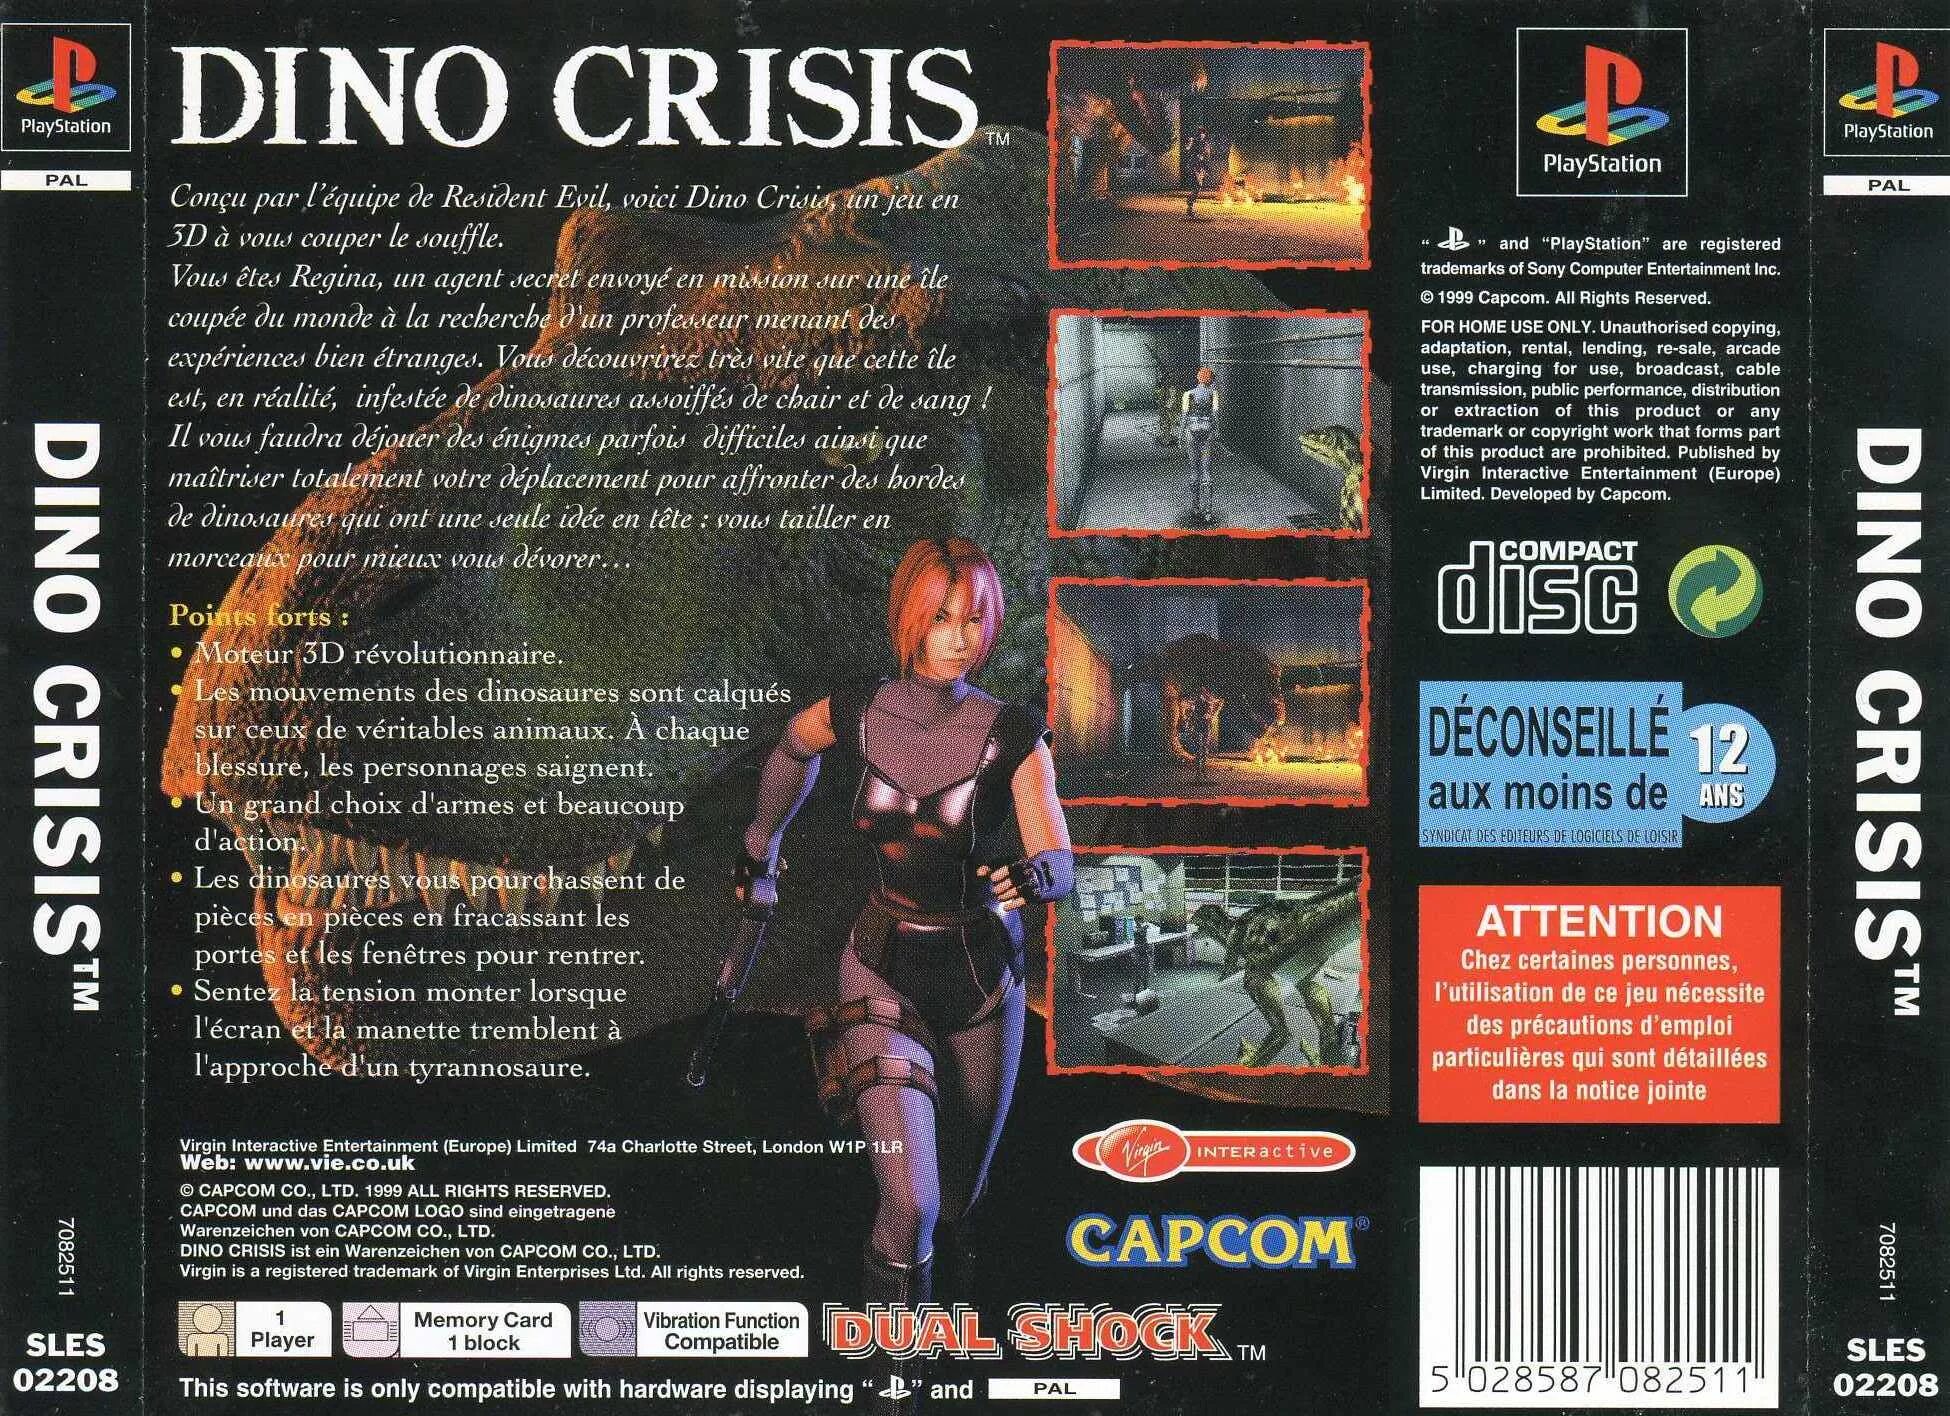 Dino crisis 1. Dino crisis Sony PLAYSTATION 1. Dino crisis ps1 обложка. Dino crisis 2 обложка. Dino crisis 1 ps1 обложка DVD.